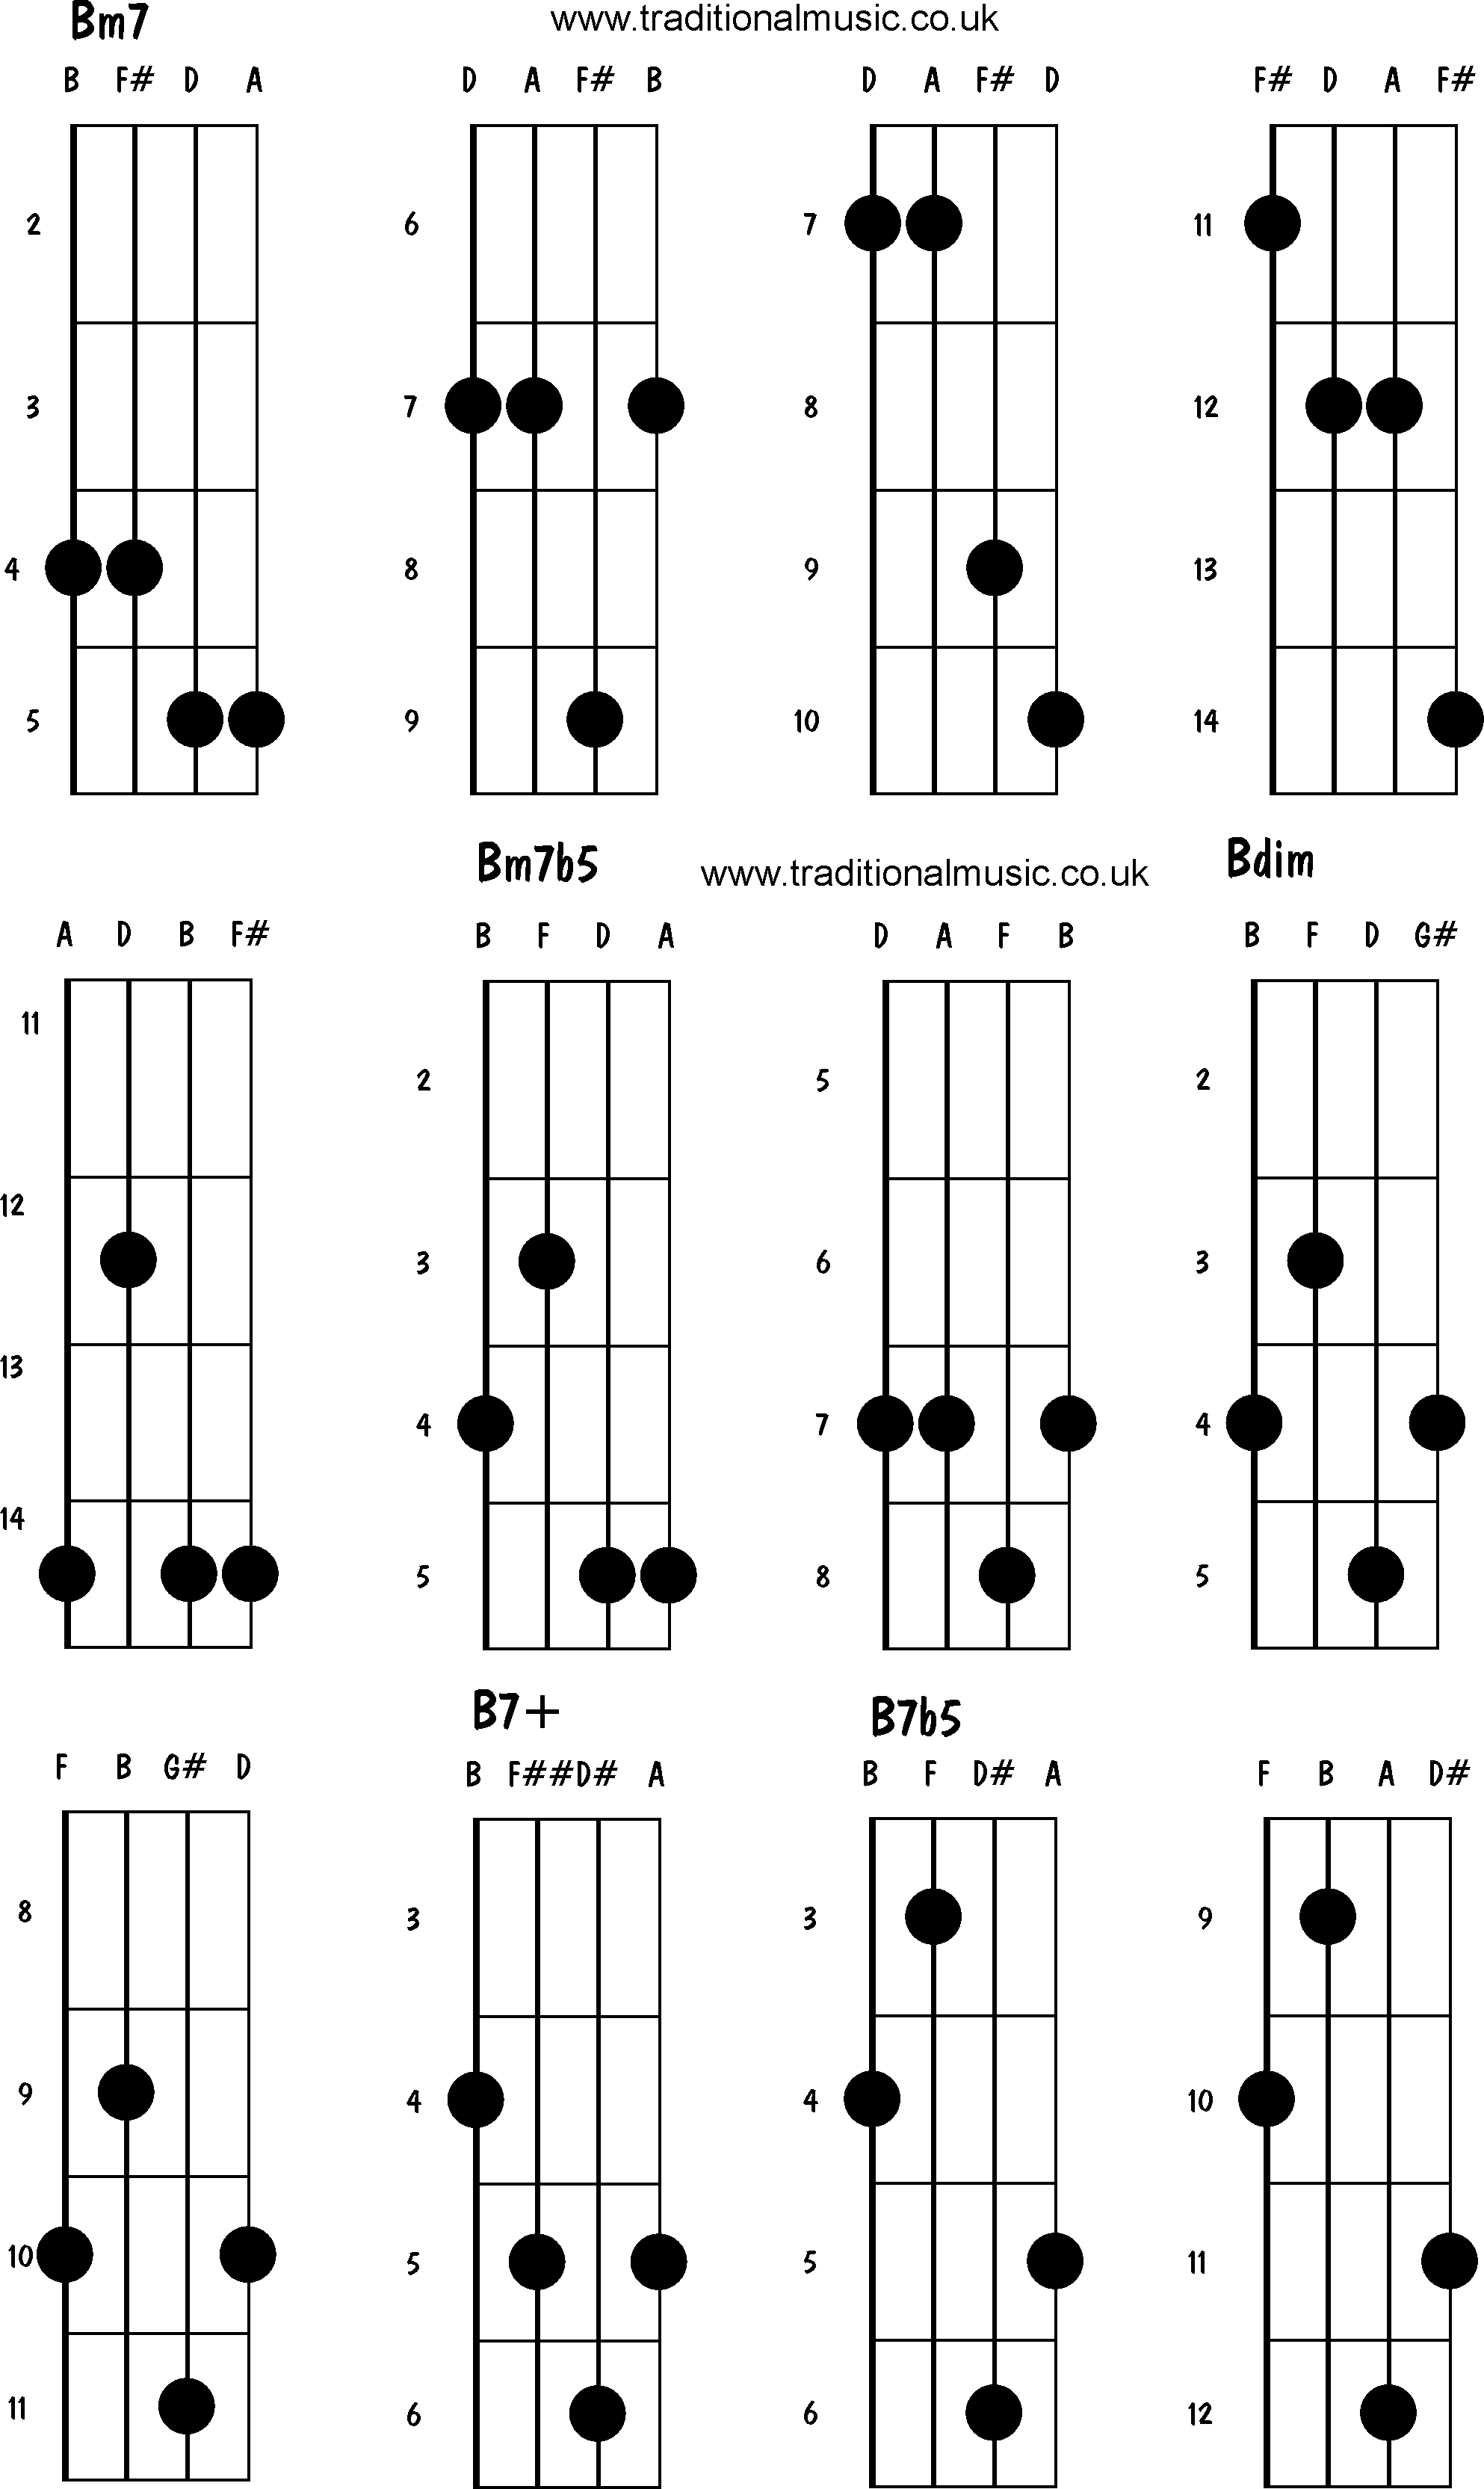 Mandolin Chords Advanced Bm7 Bm7b5 Bdim B7 B7b5